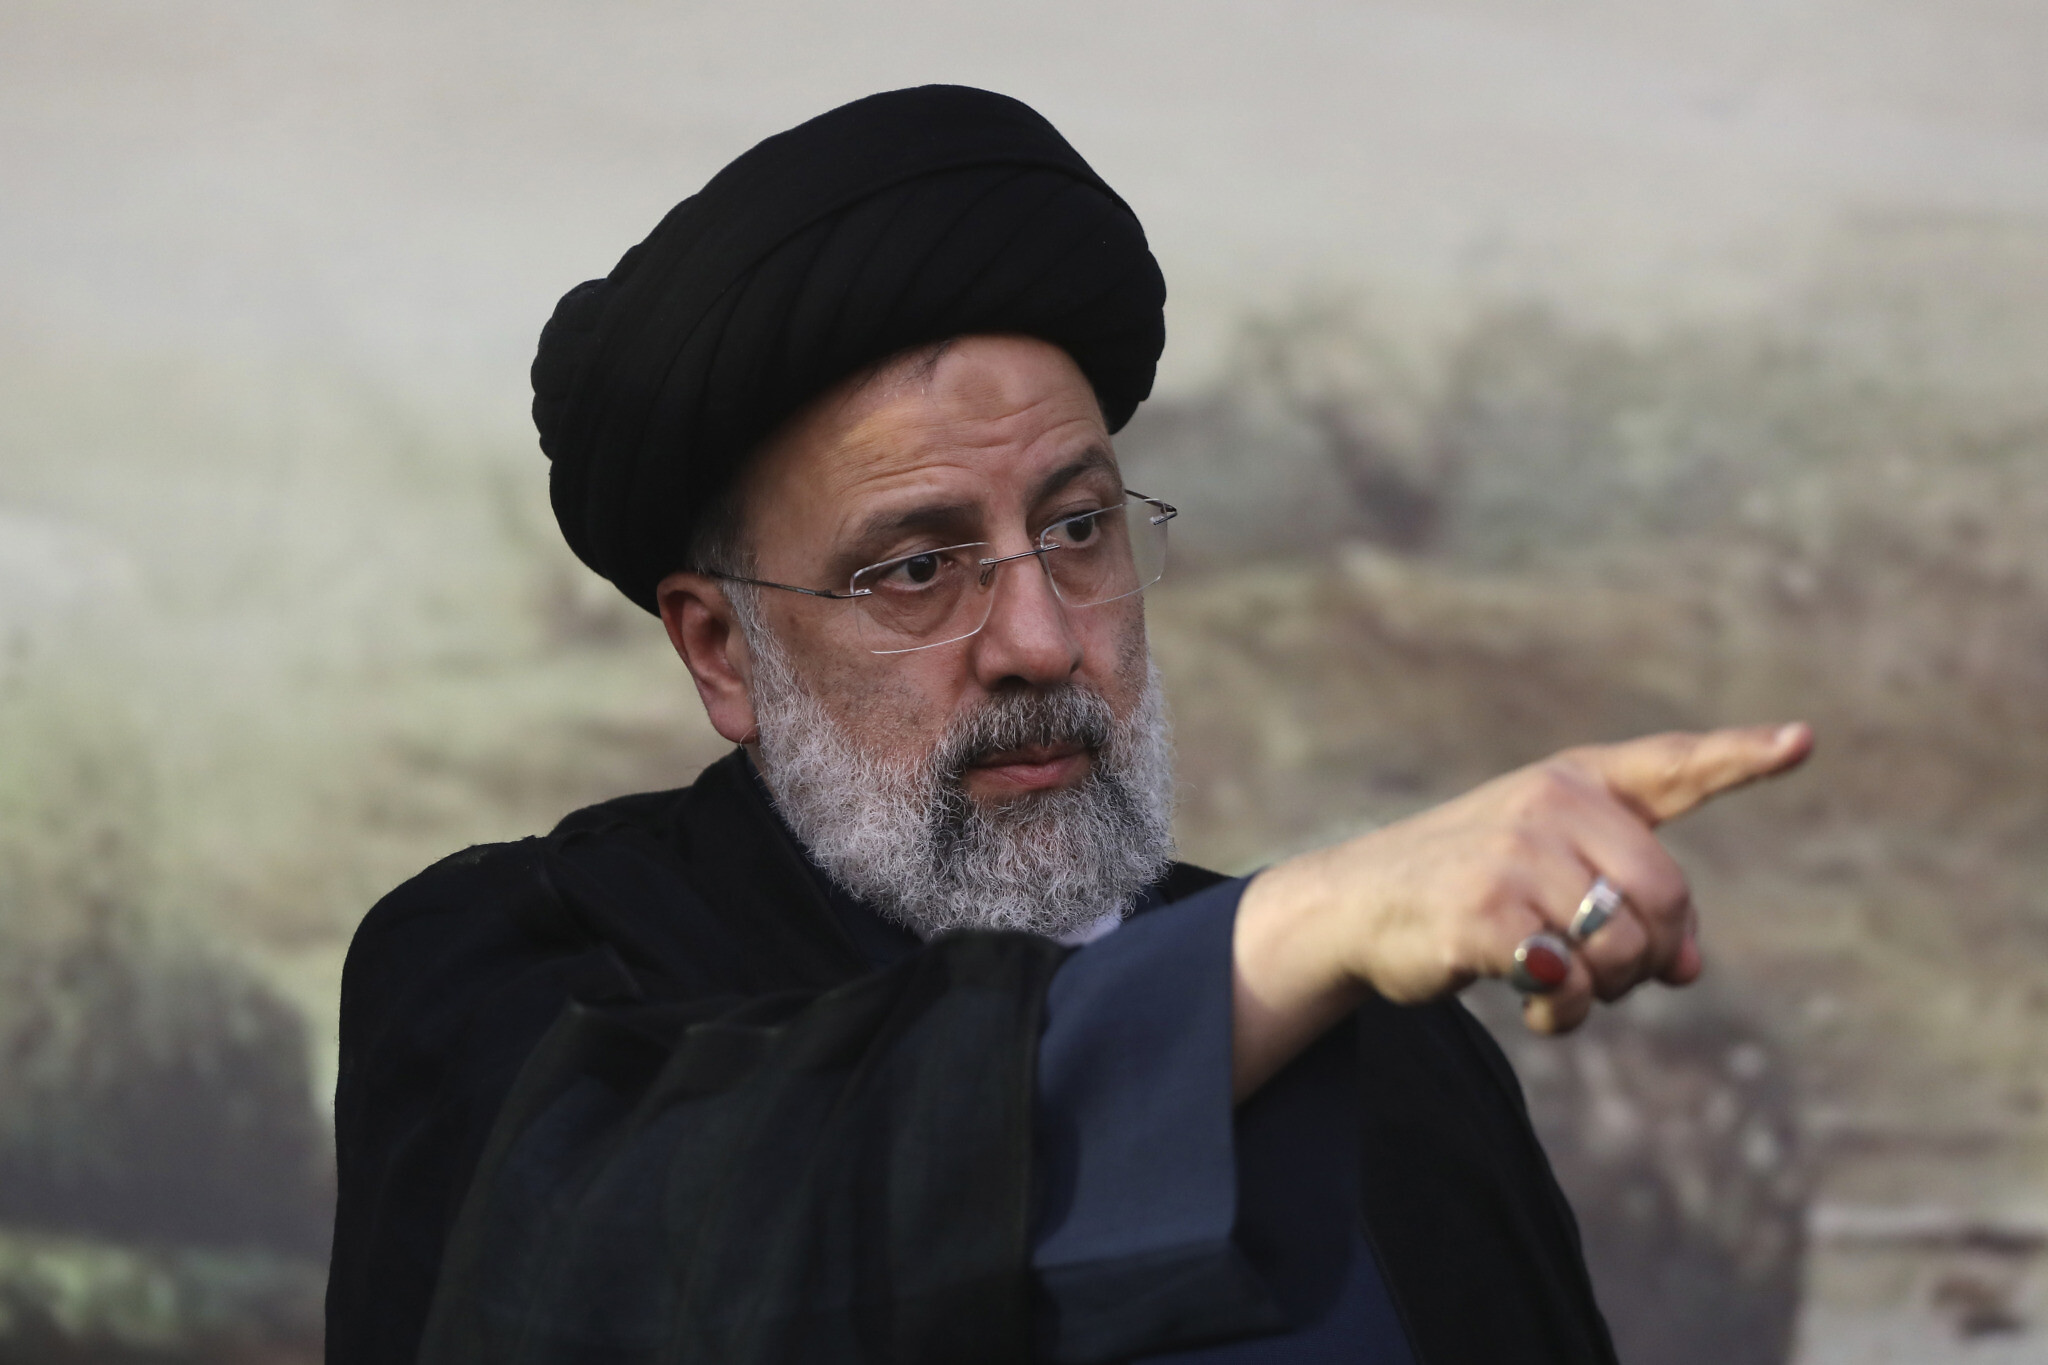 Το Ιράν δεν θα ξεκινήσει πόλεμο, αλλά θα "απαντήσει με ισχυρό τρόπο" σε όποιον το εκφοβίζει, καθησύχασε σήμερα ο πρόεδρος Εμπραχίμ Ραϊσί